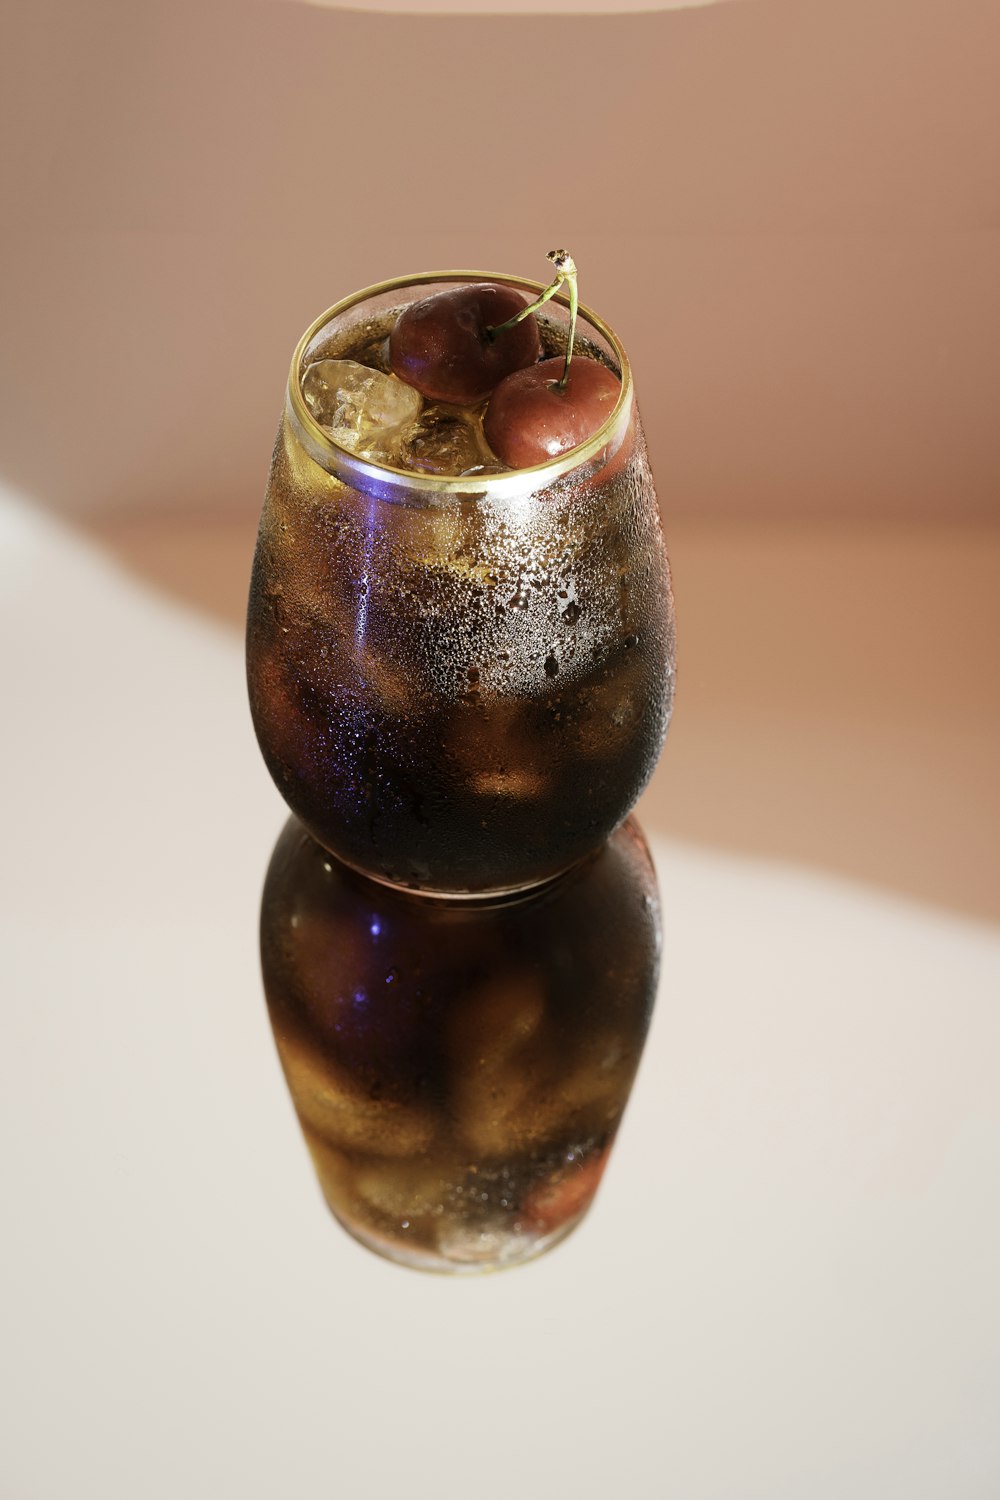 Vaso transparente con líquido rojo